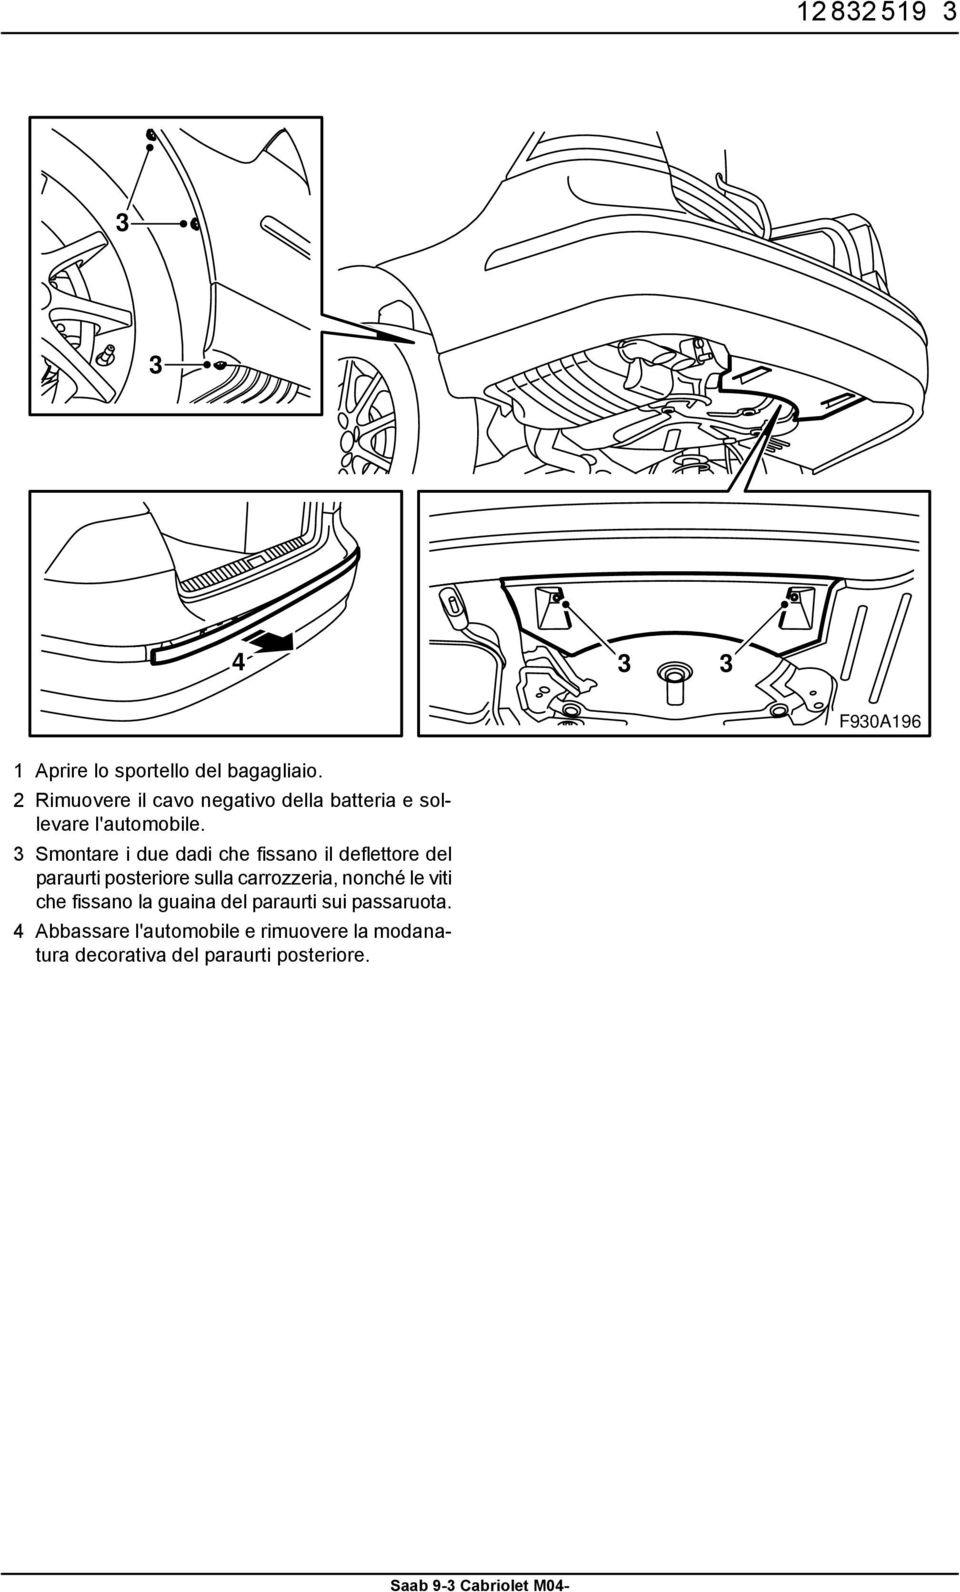 3 Smontare i due dadi che fissano il deflettore del paraurti posteriore sulla carrozzeria,